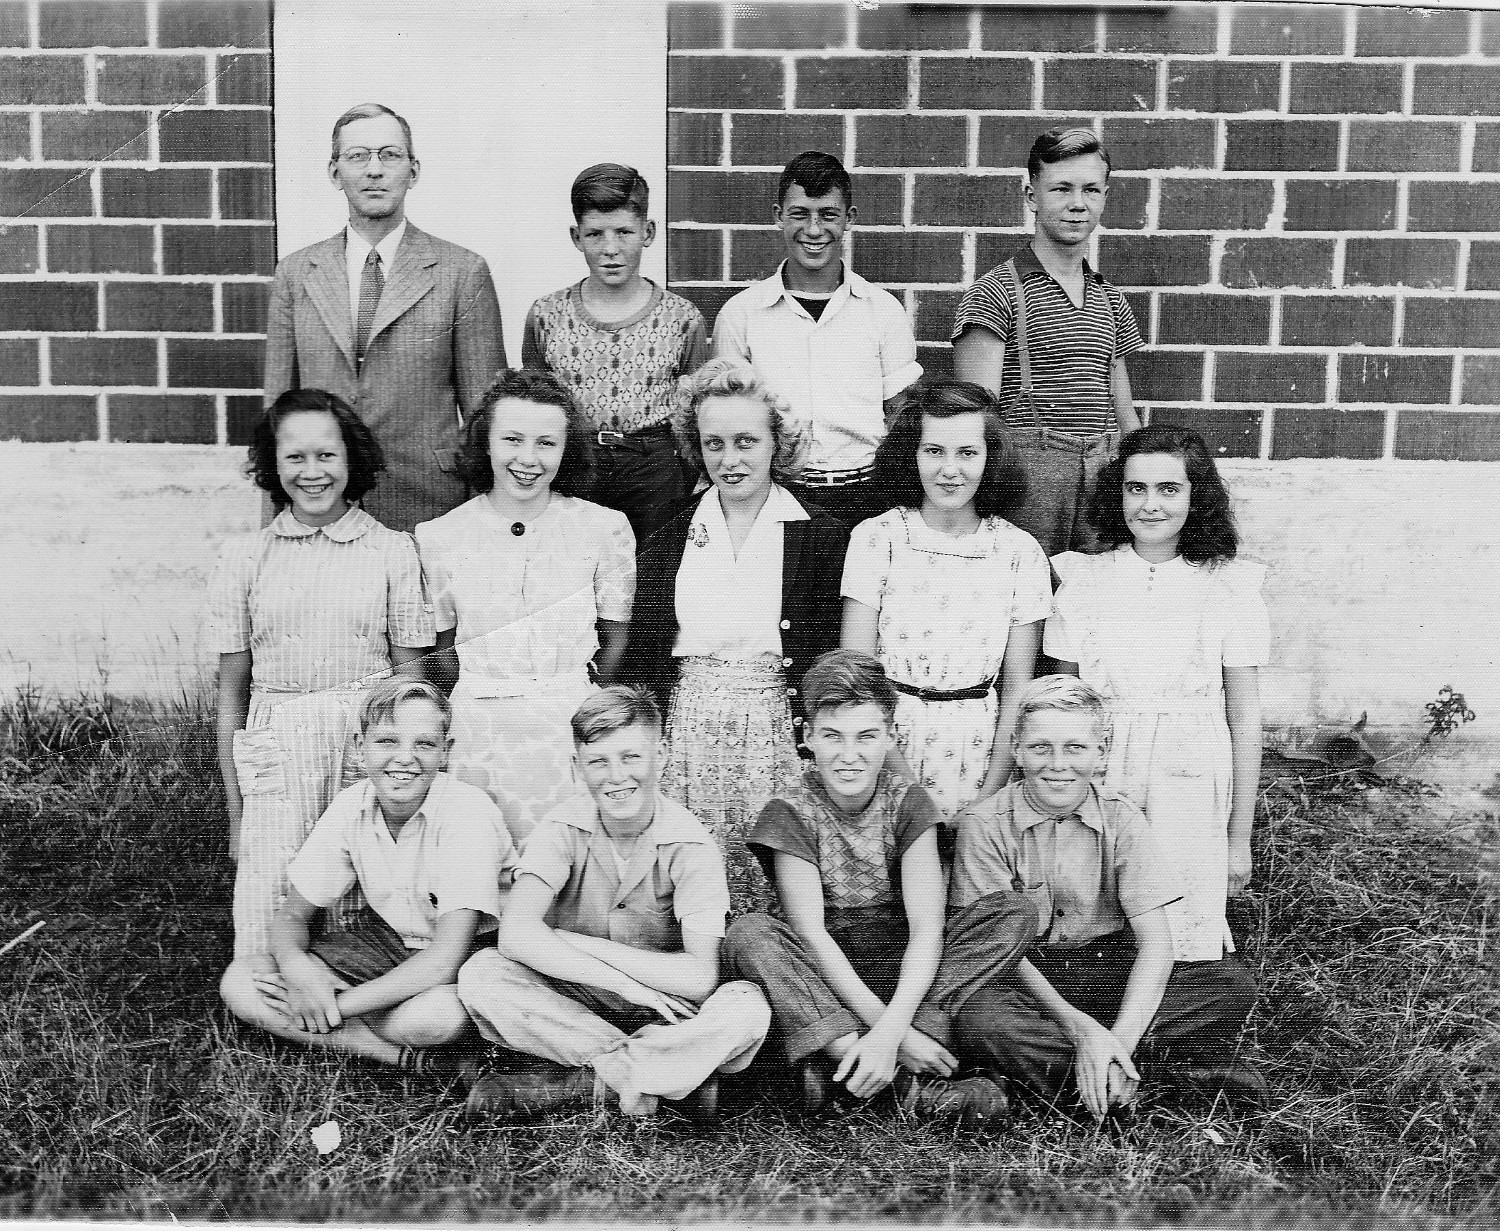 Waubaushene Elementary School, about 1944